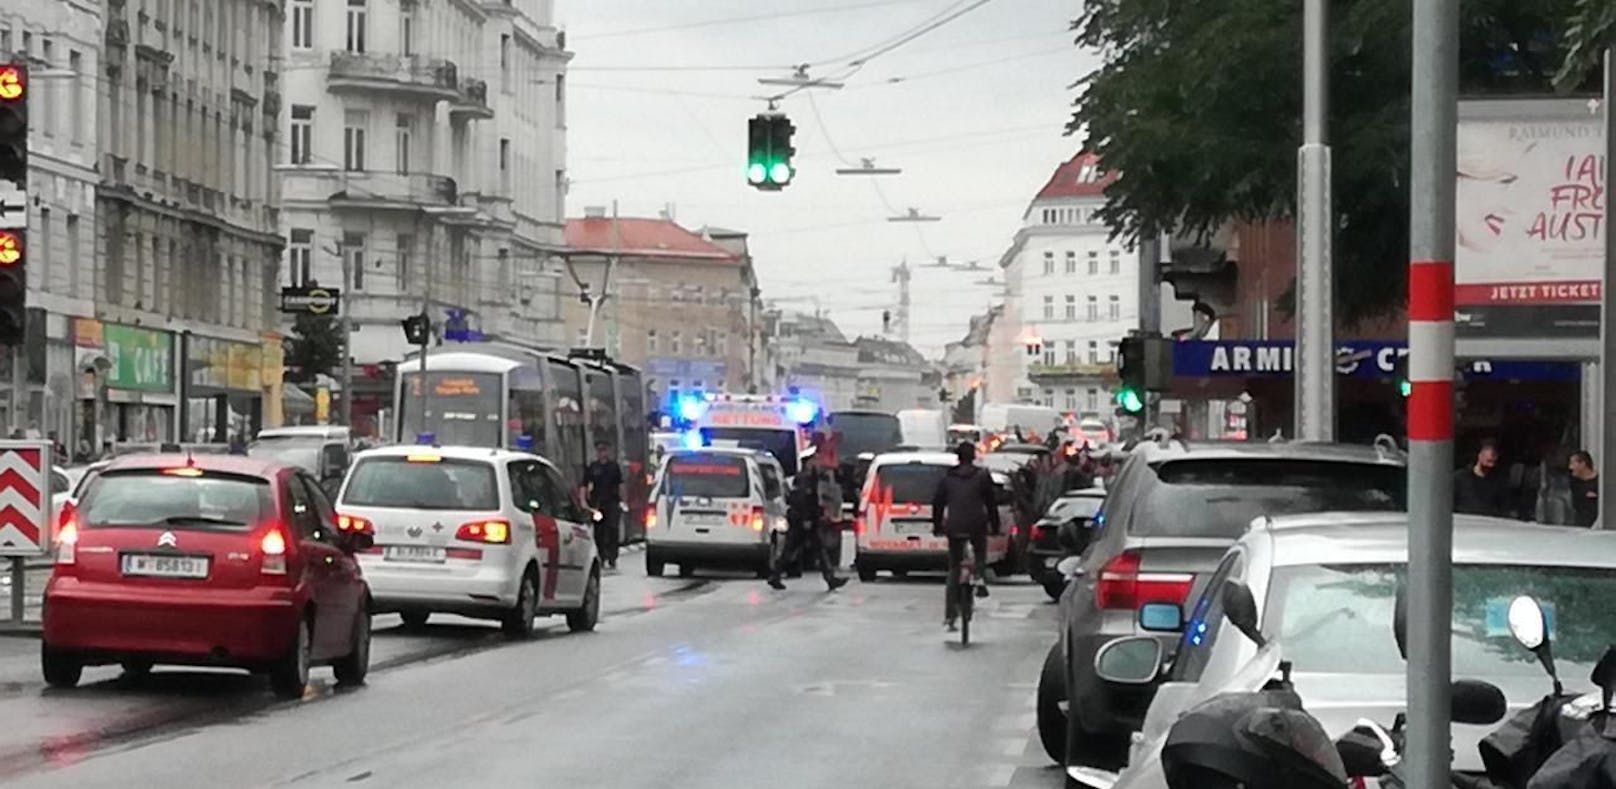 Bim rammte Fußgänger in Wien-Alsergrund